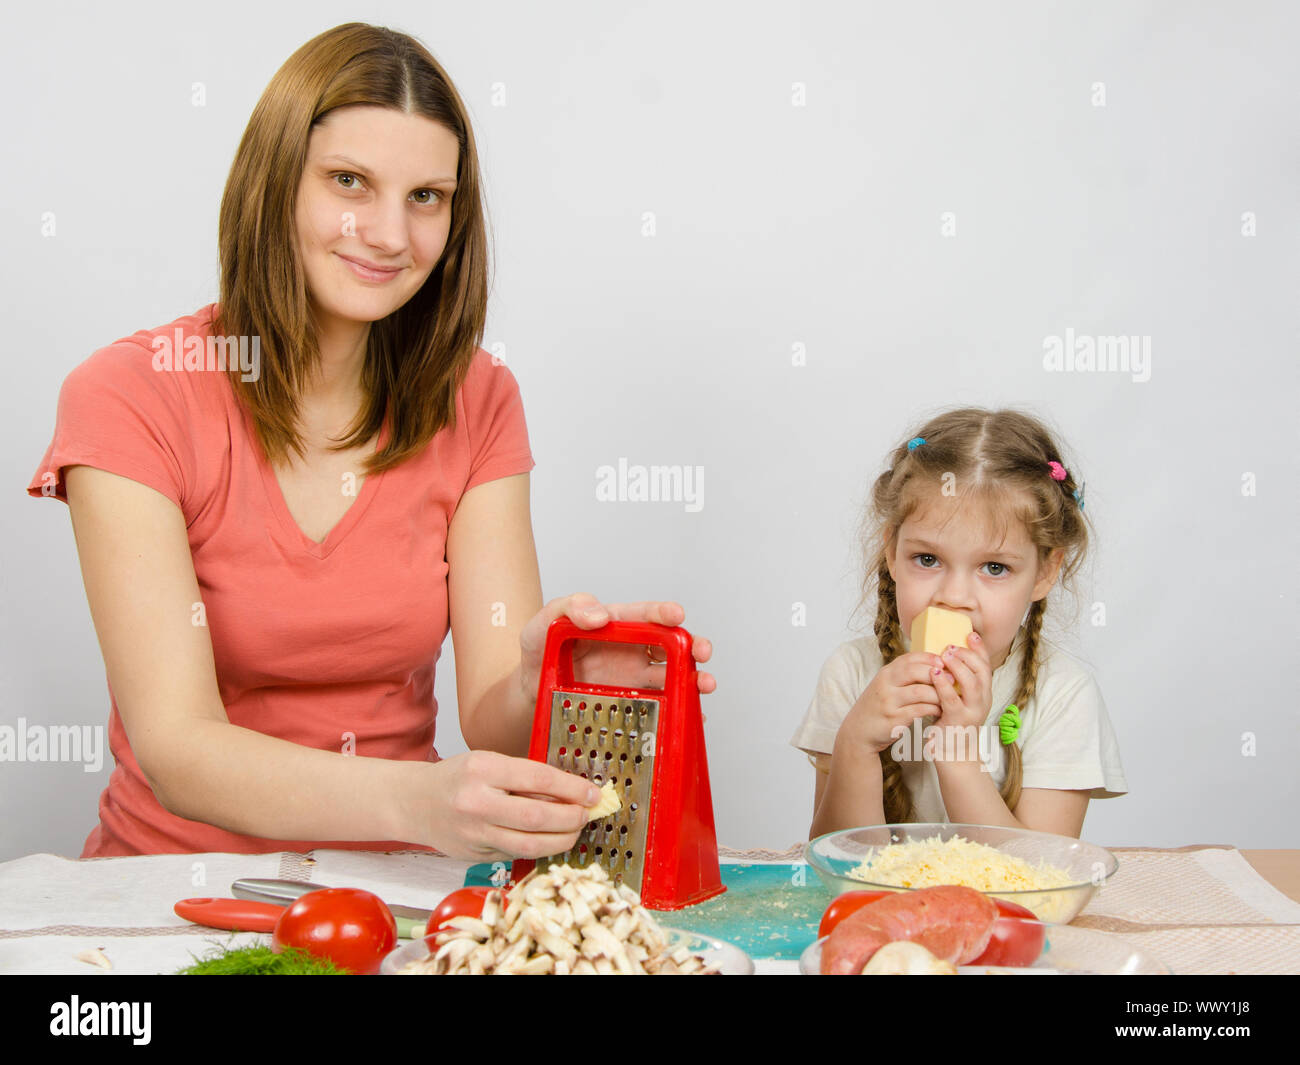 La jeune fille à la table de cuisine râpe à fromage t assis près d'une fille de cinq ans et mange du fromage Banque D'Images